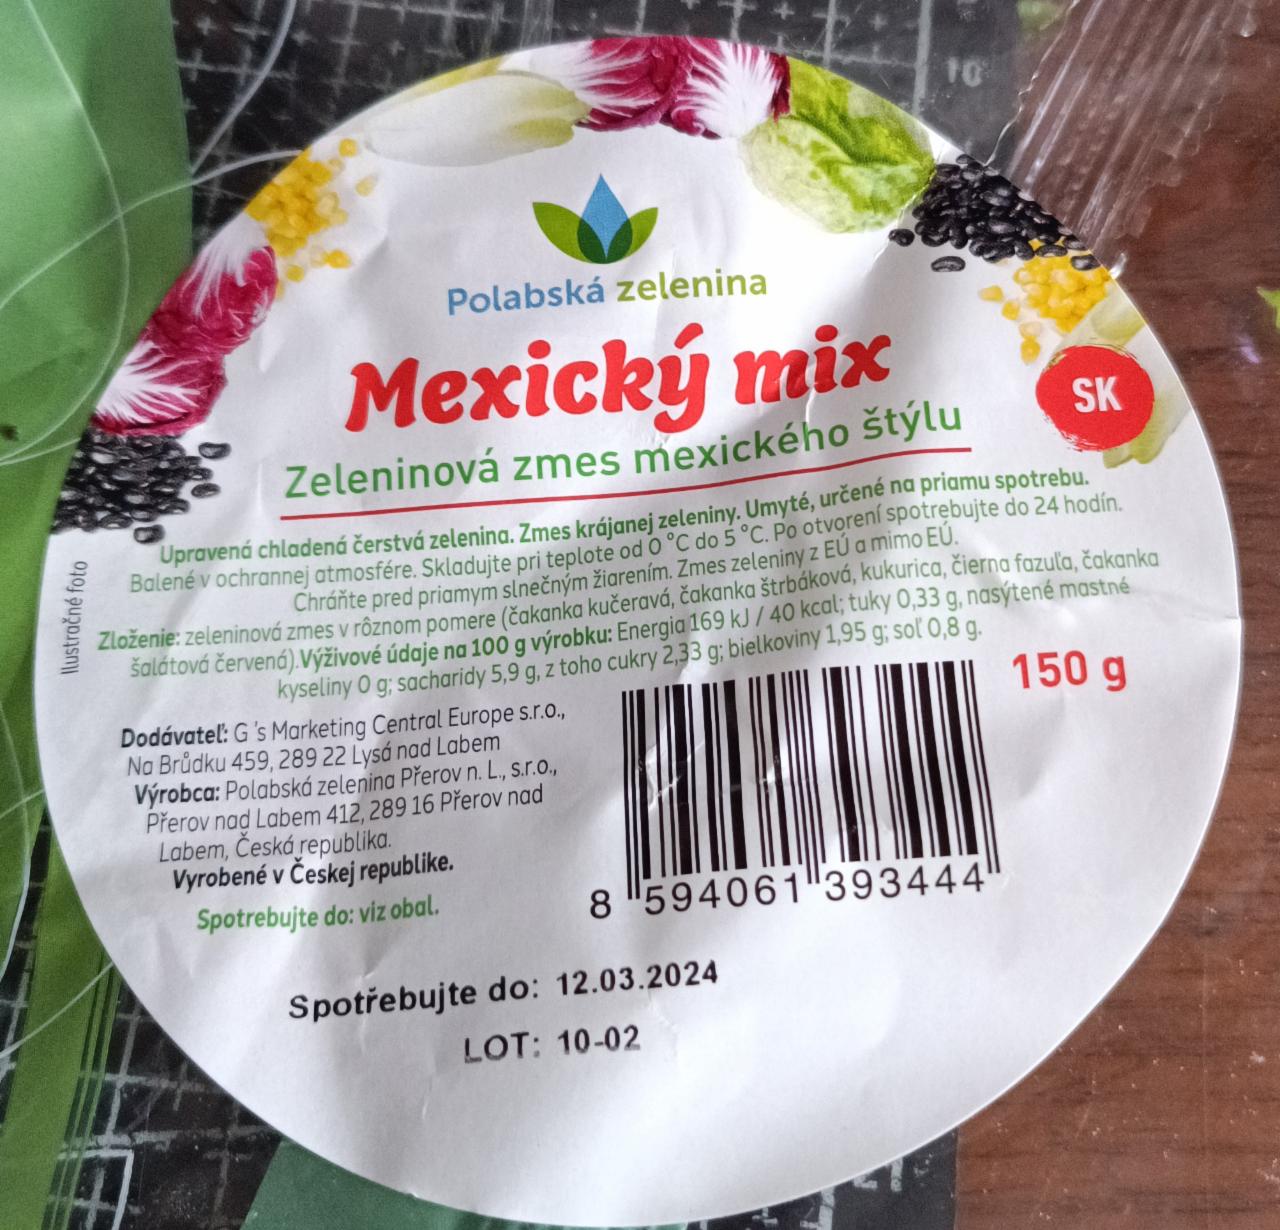 Képek - Mexický mix Polabská zelenina